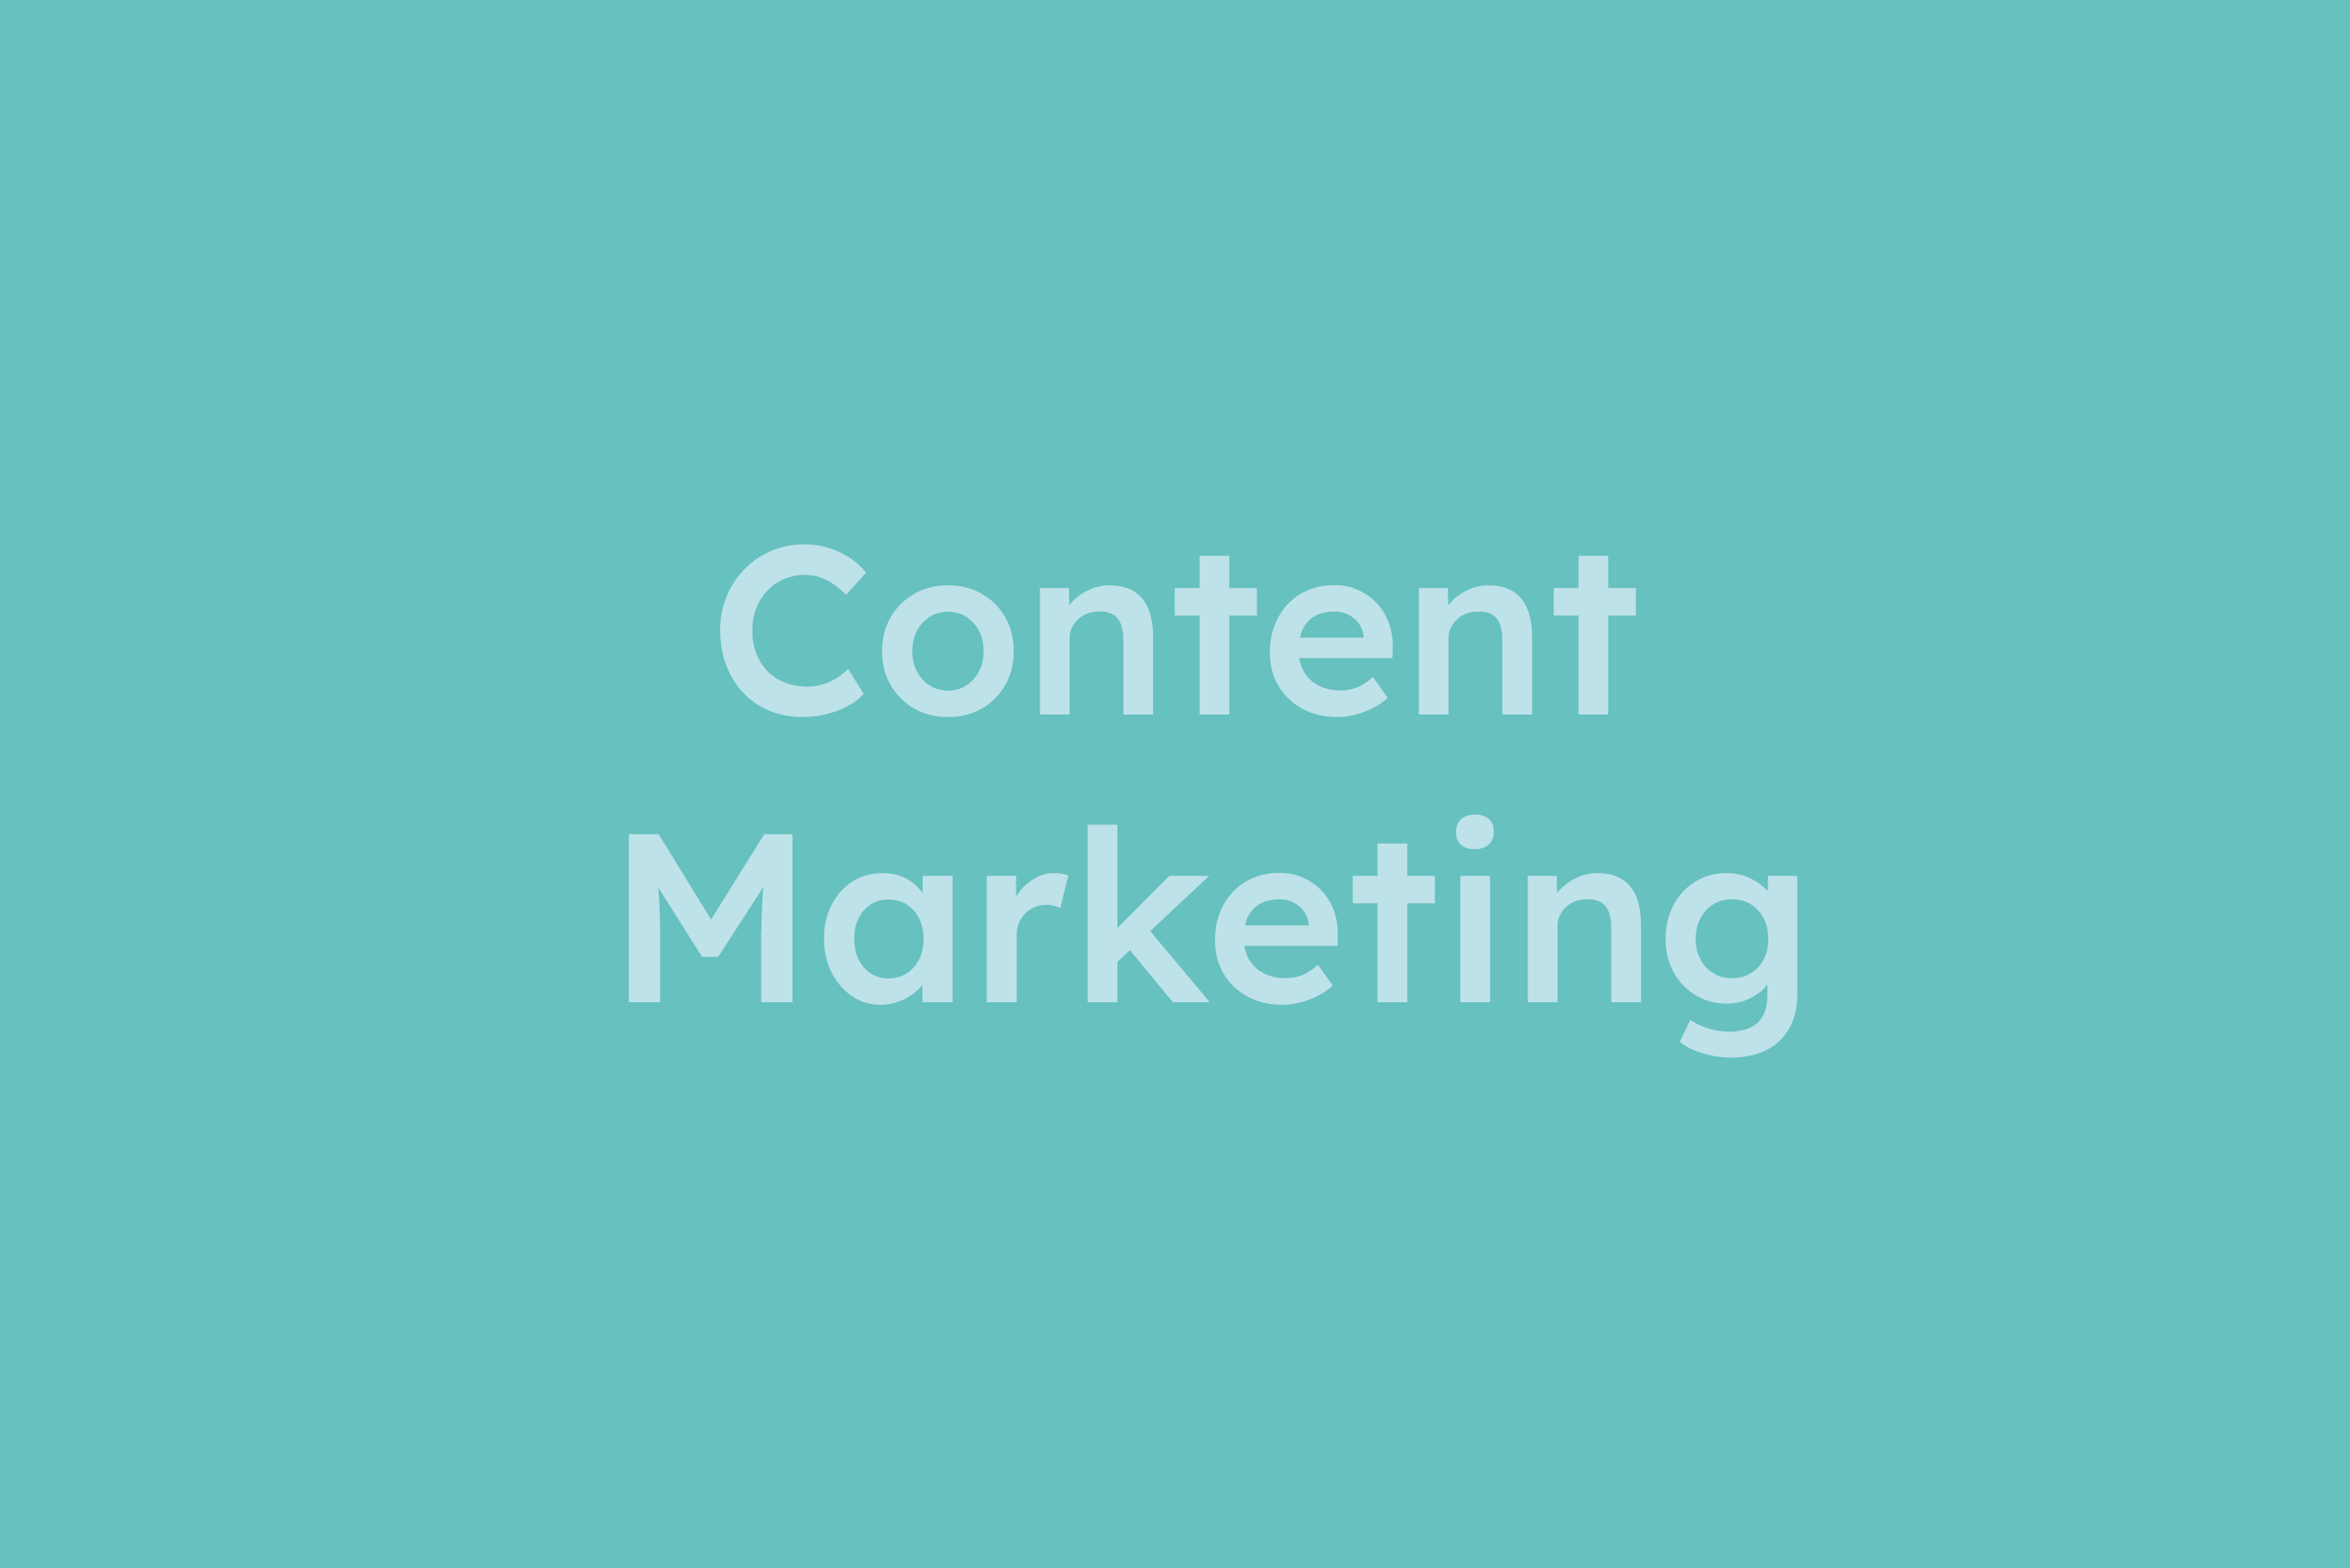 Content Marketing erklärt im Glossar von Campaign